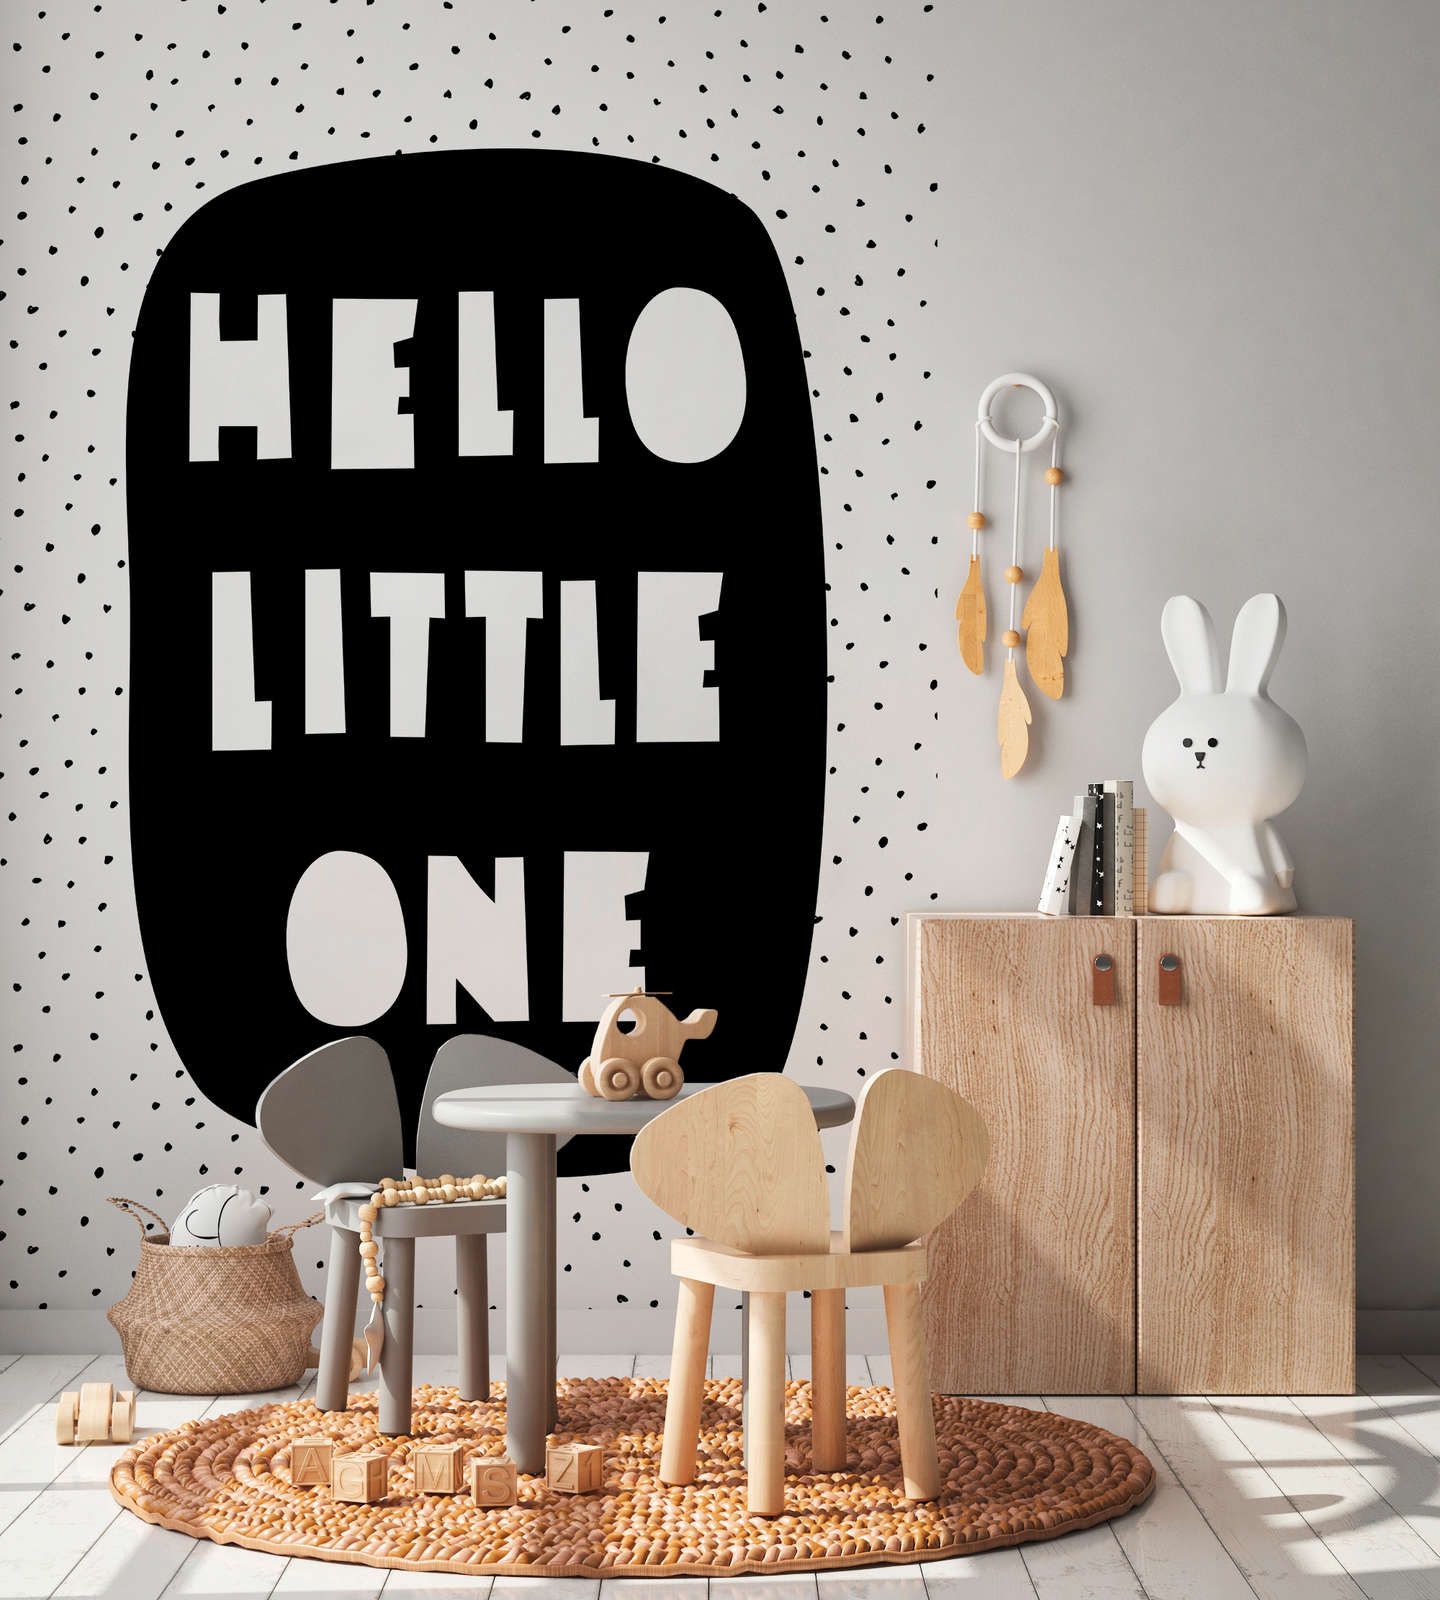             Fotomural para habitación infantil con letras "Hello Little One" - Material sin tejer liso y mate
        